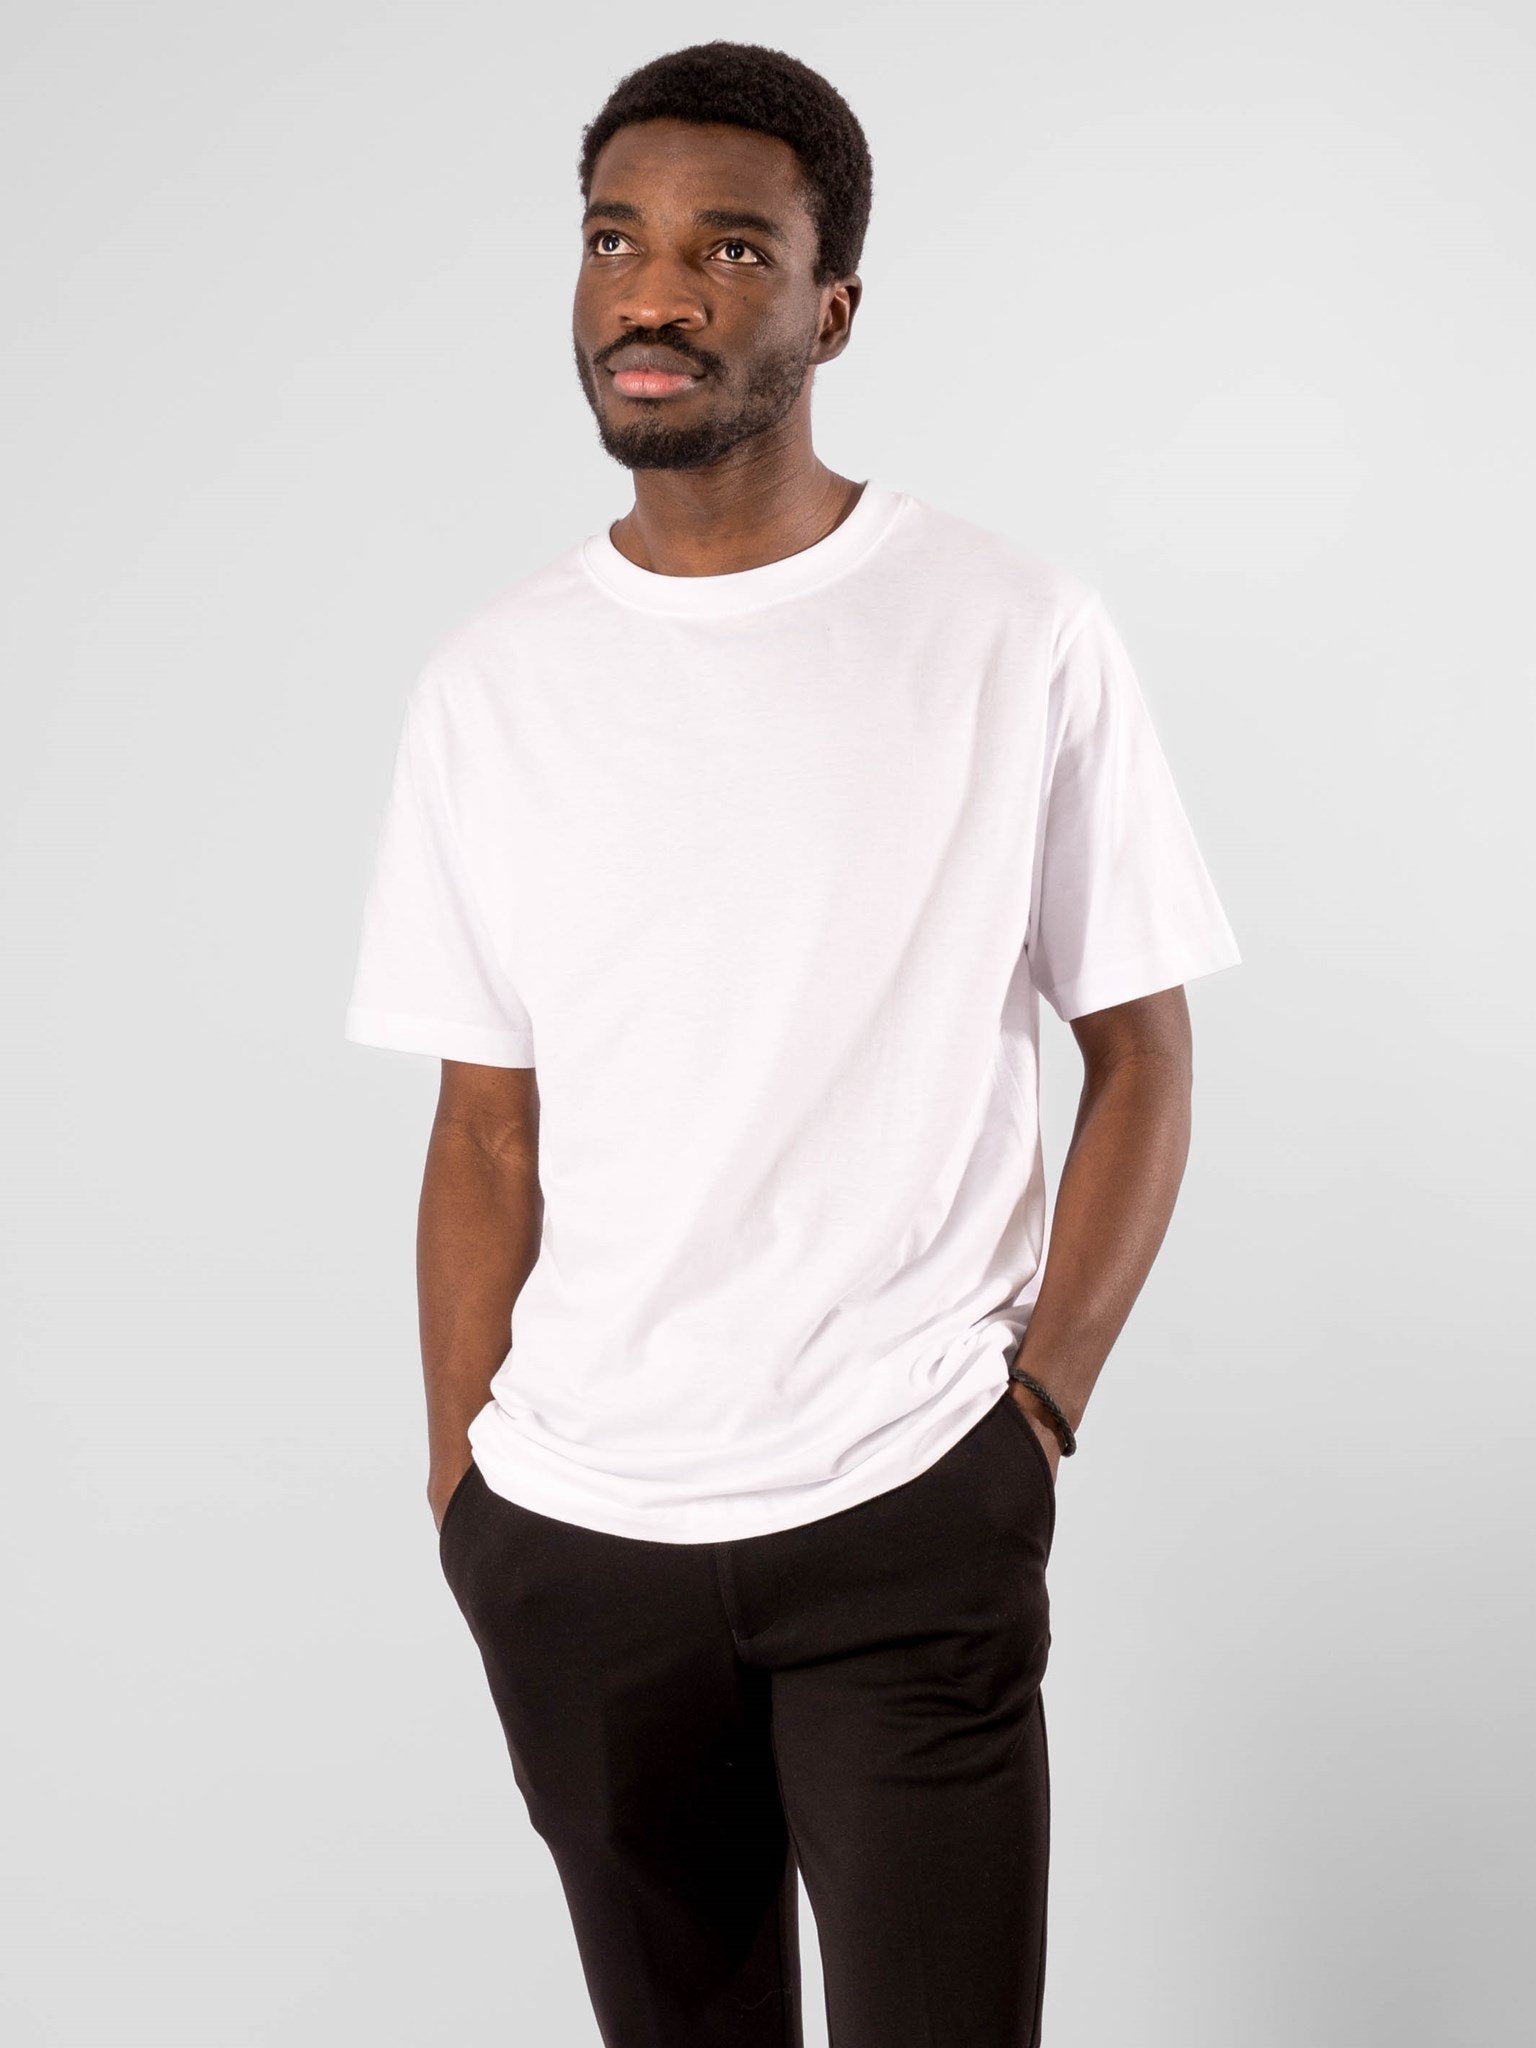 Whitney sfærisk Ungkarl Oversized T-shirt - Hvid | TeeShoppen